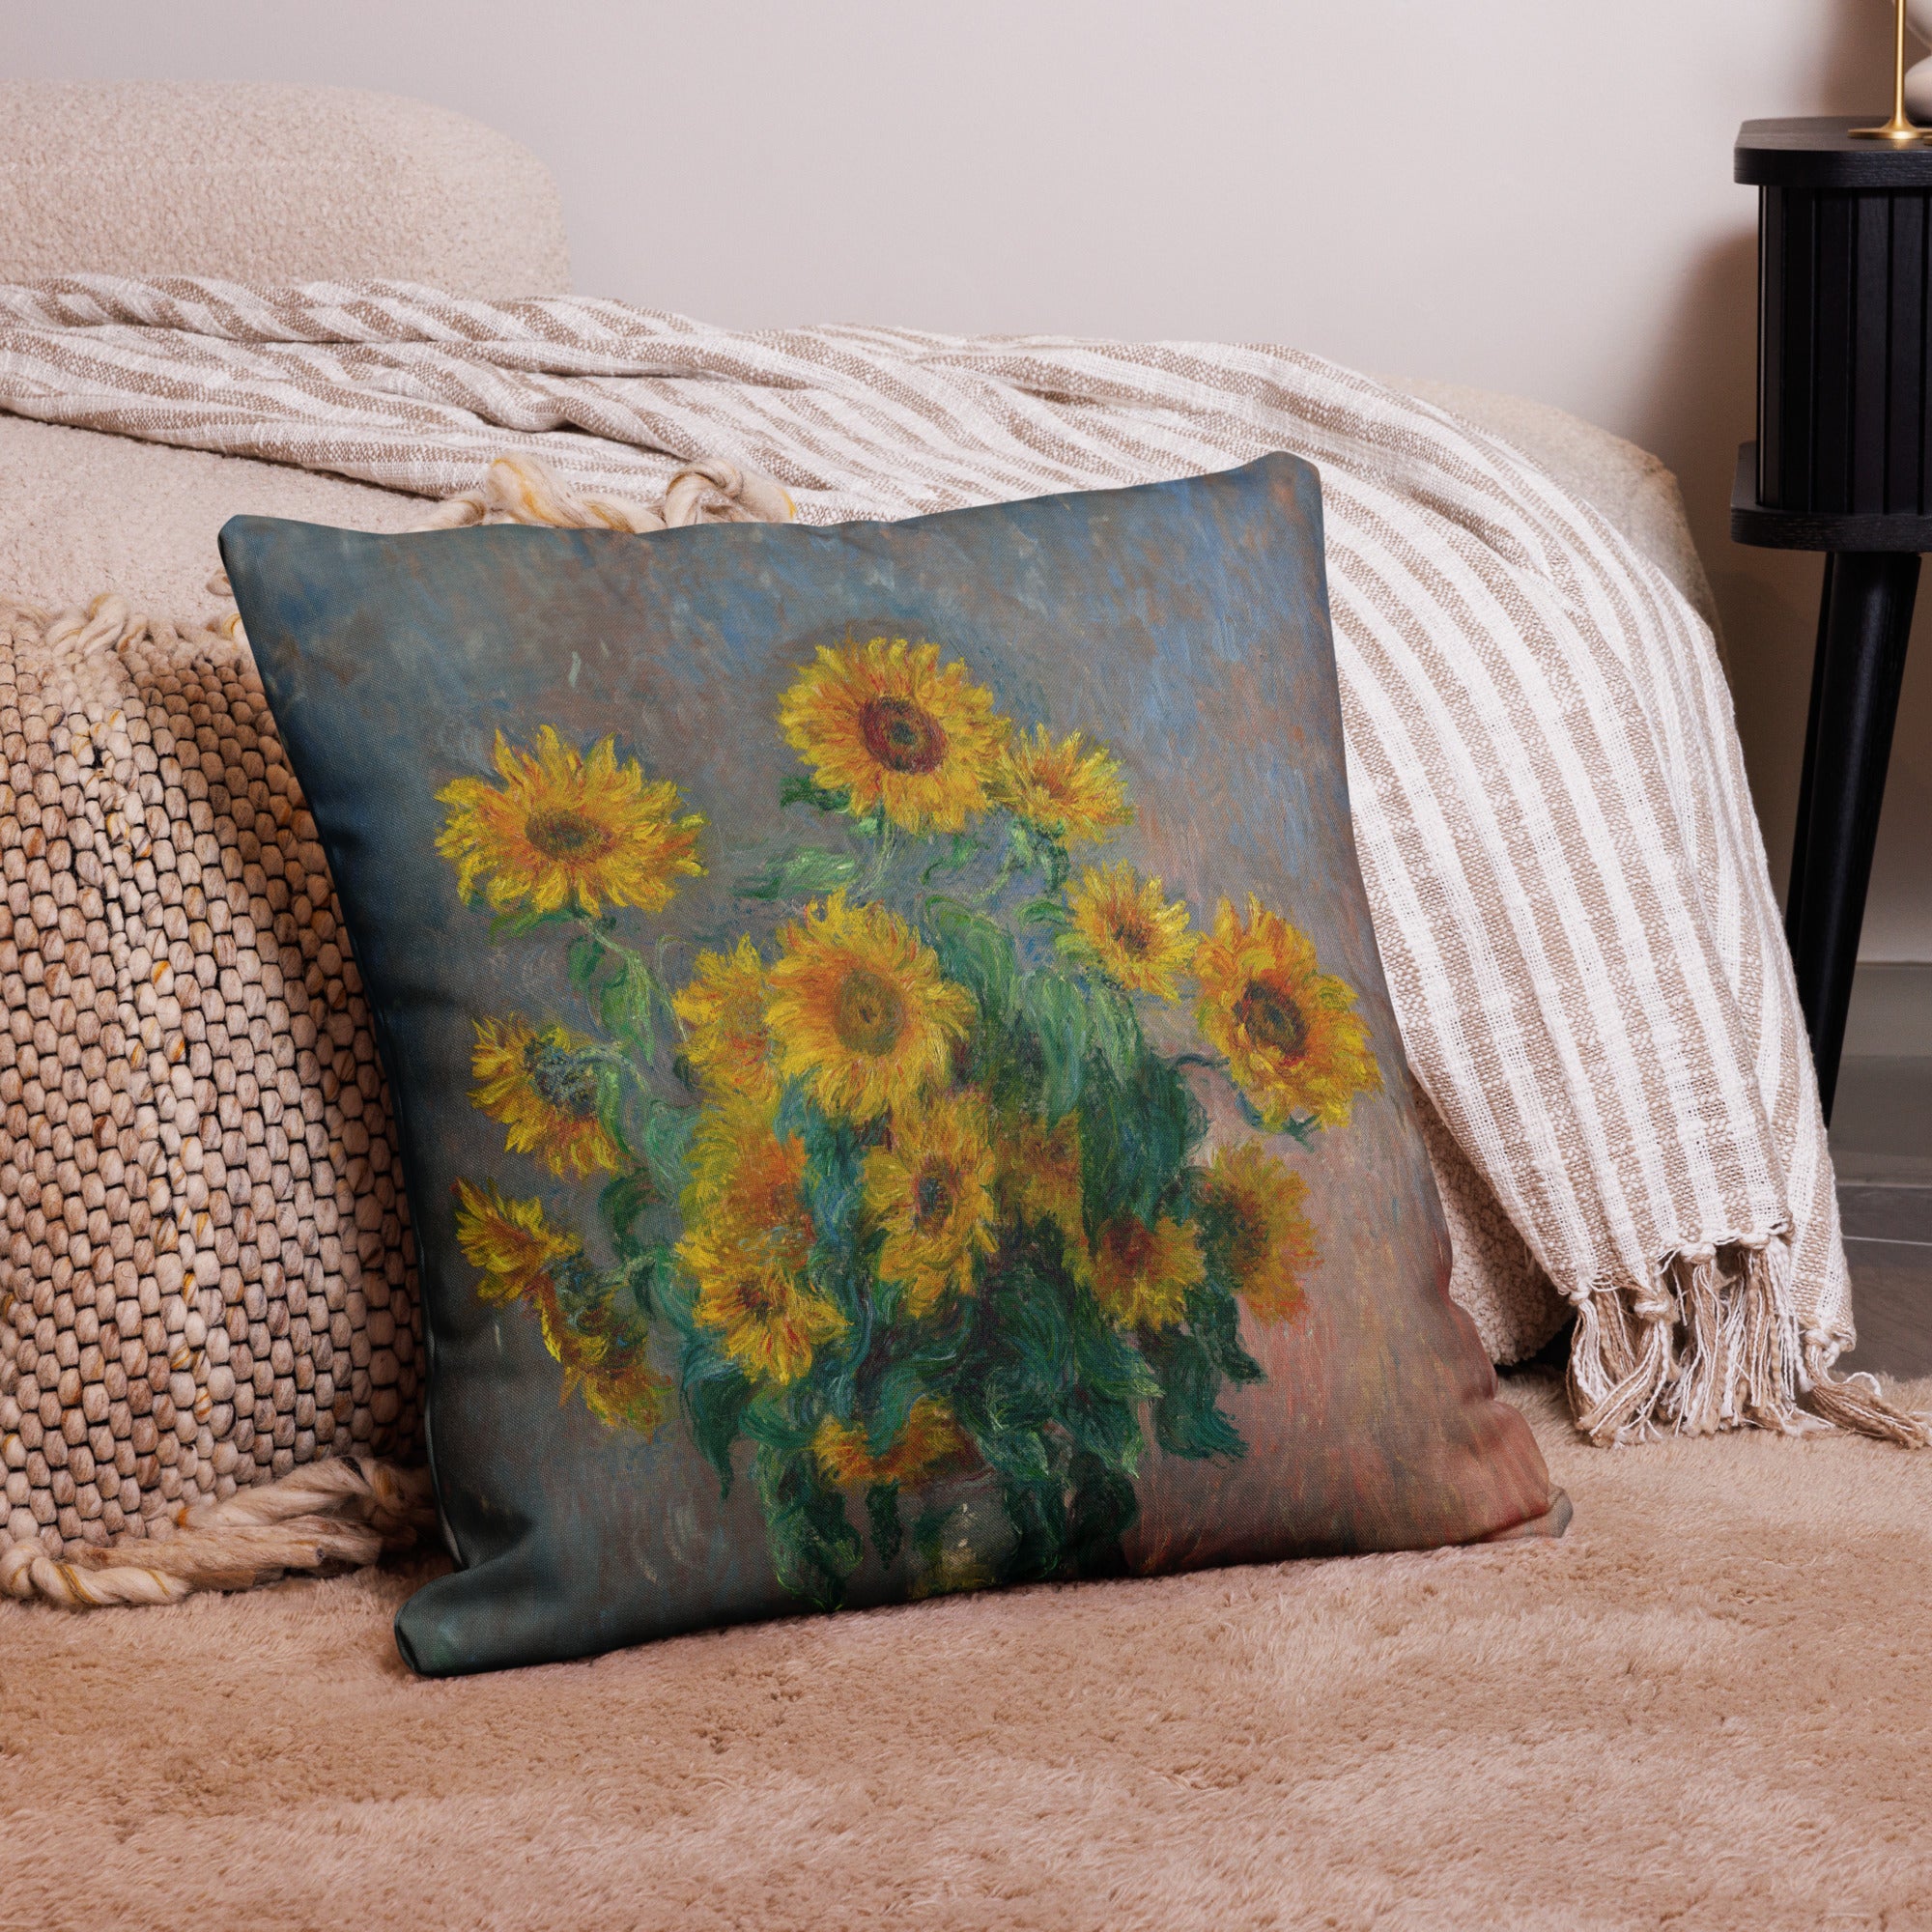 Claude Monet 'Bouquet of Sunflowers' Famous Painting Premium Pillow | Premium Art Cushion